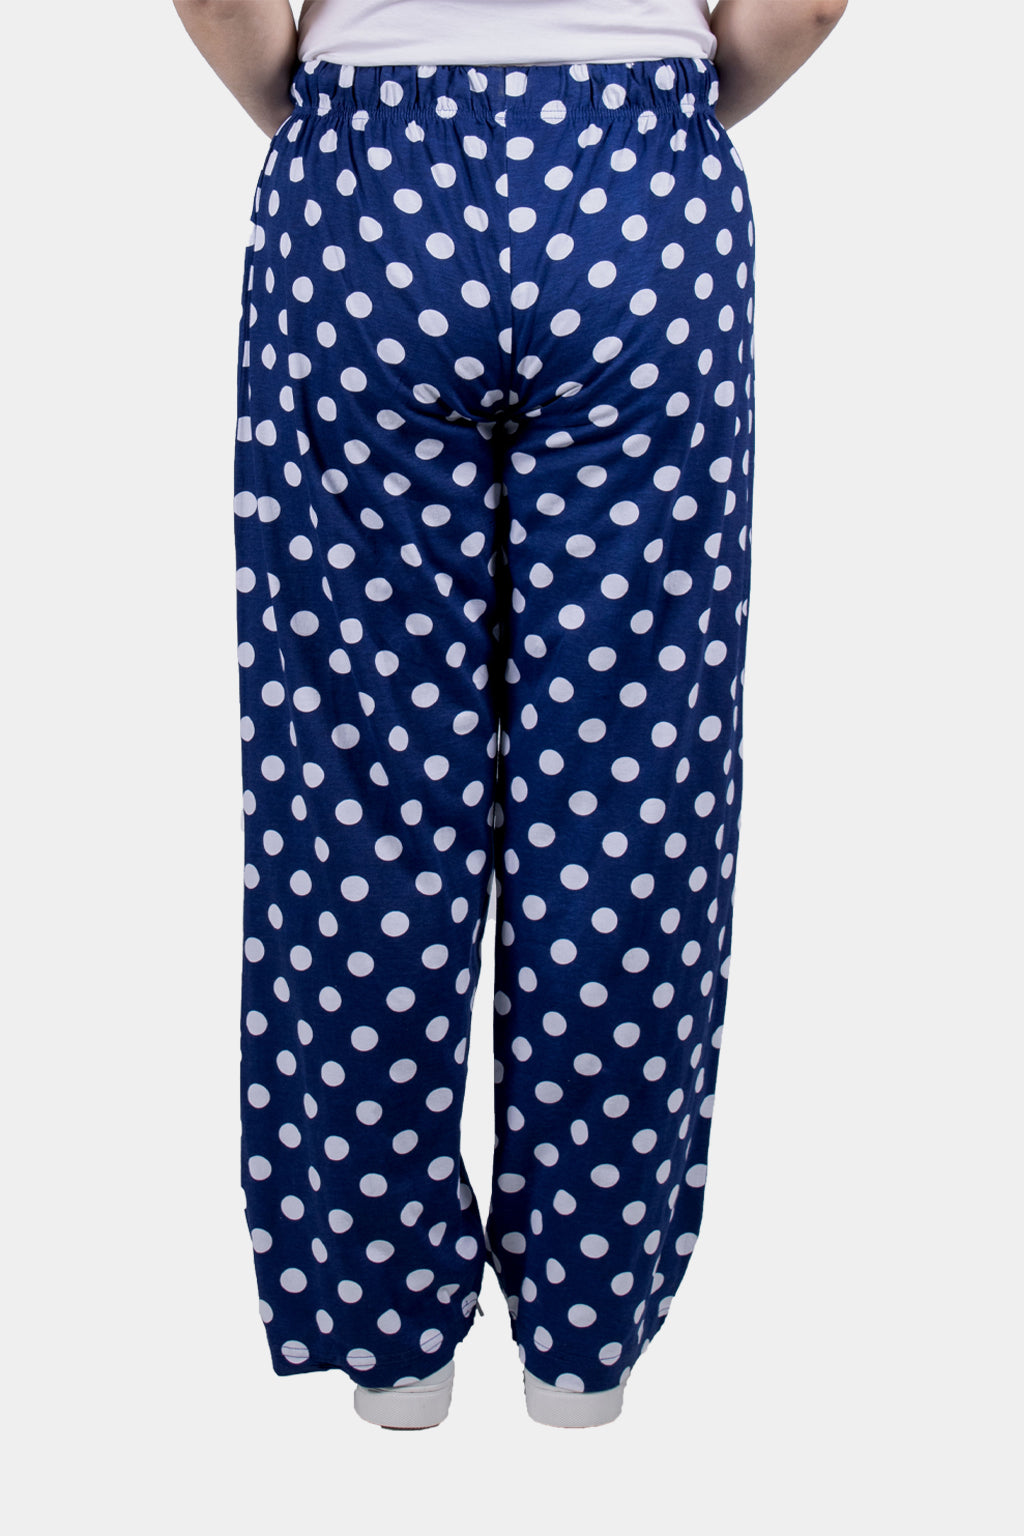 Bianco Nero Printed Pajamas Bottom